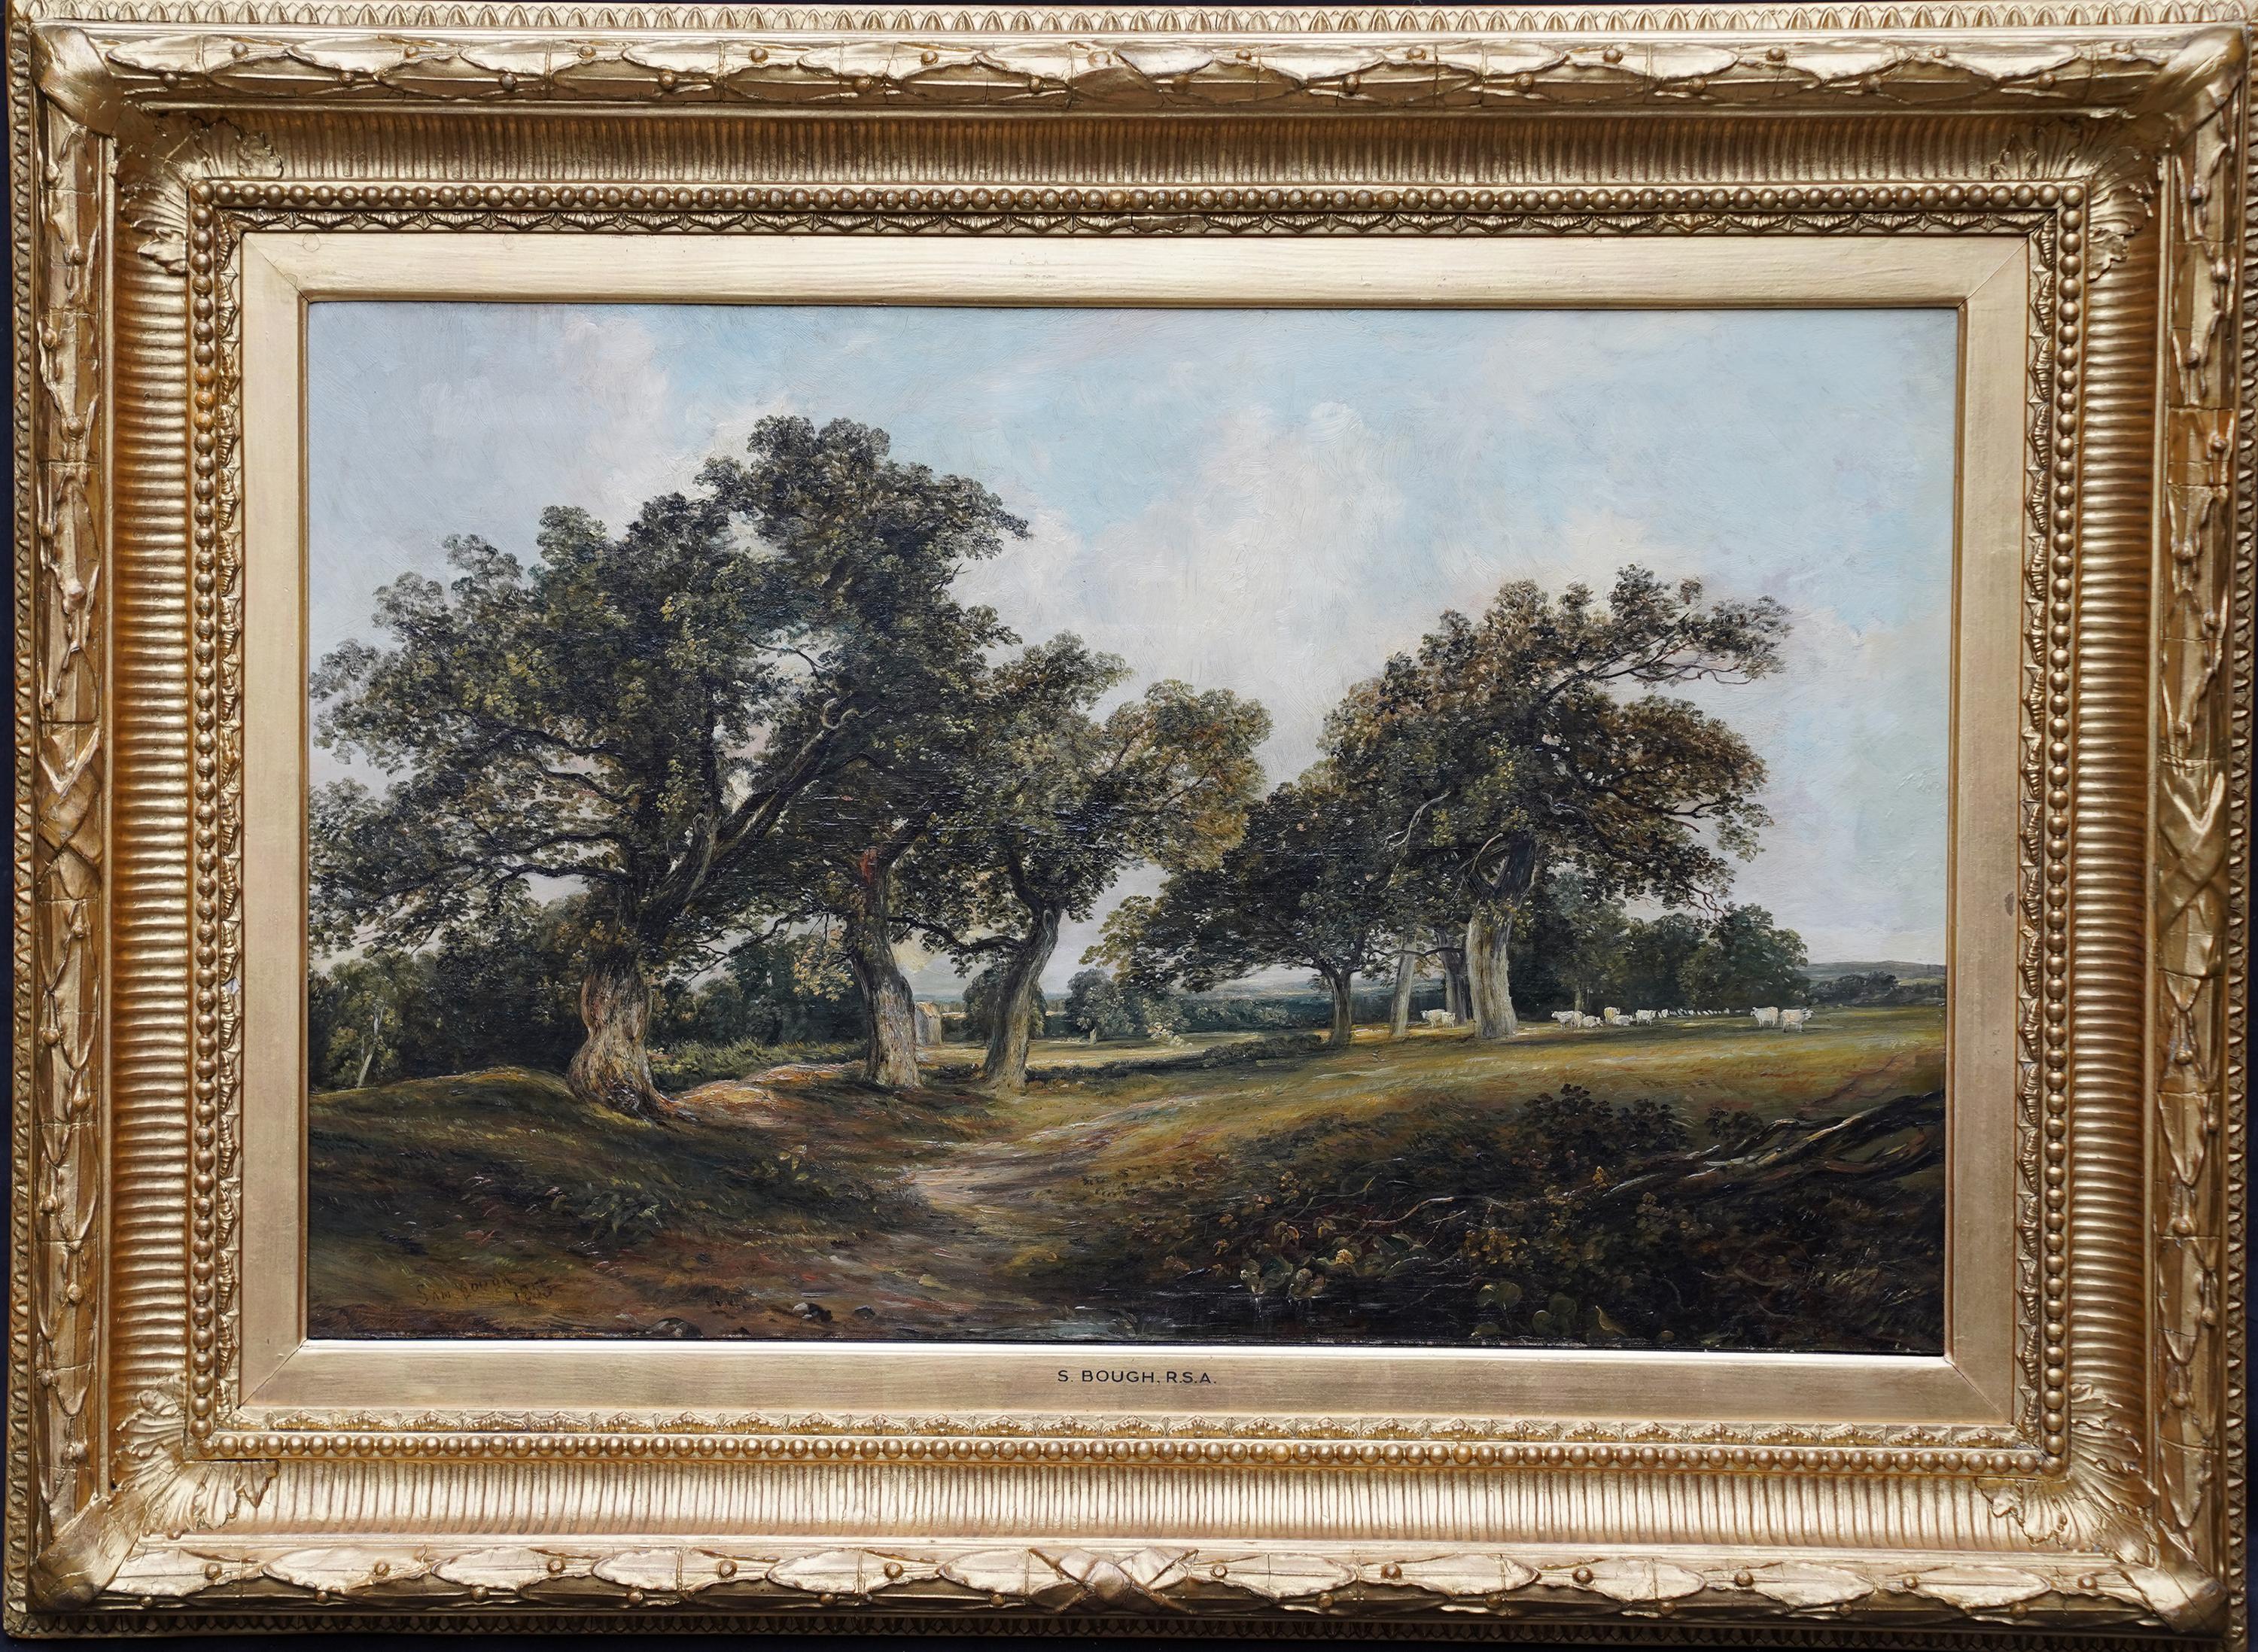 Samuel Bough Landscape Painting - Cadzow Forest Scotland - British mid 19thC art Scottish landscape oil painting